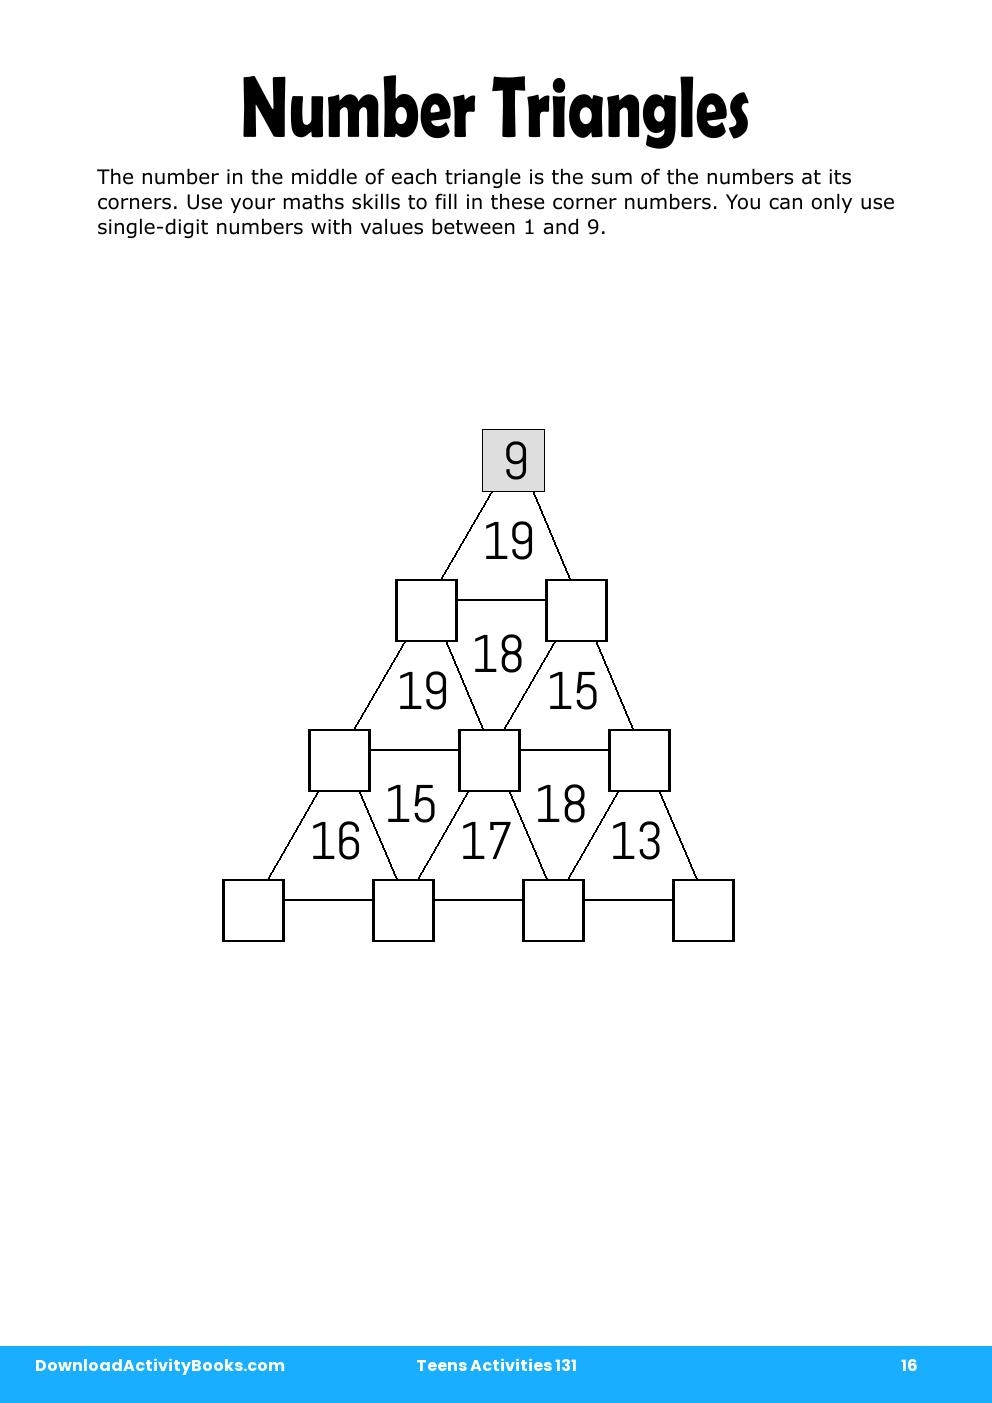 Number Triangles in Teens Activities 131